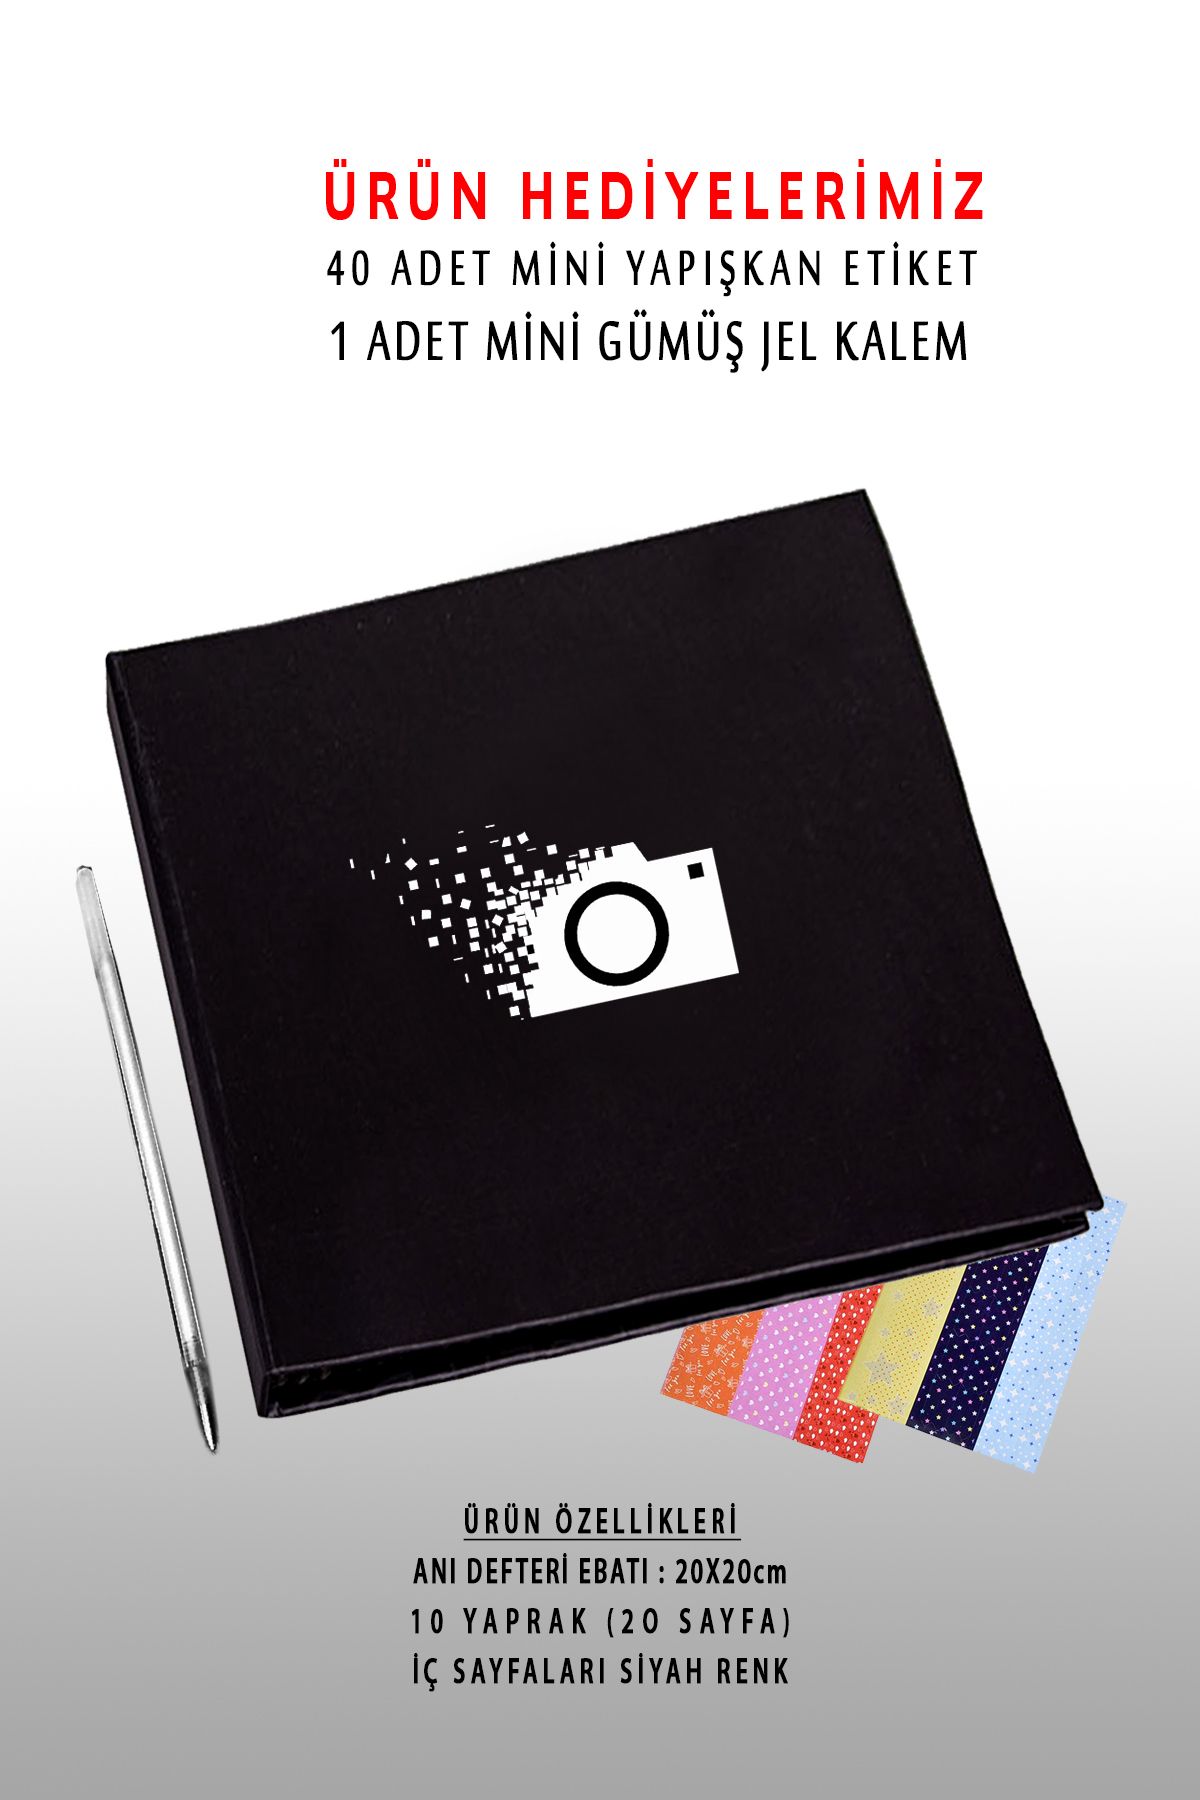 bymat Anı Defteri - Fotoğraf Albümü - Siyah Albüm - 20x20cm - Mini Jel Kalem Ve Stiker Hediyeli